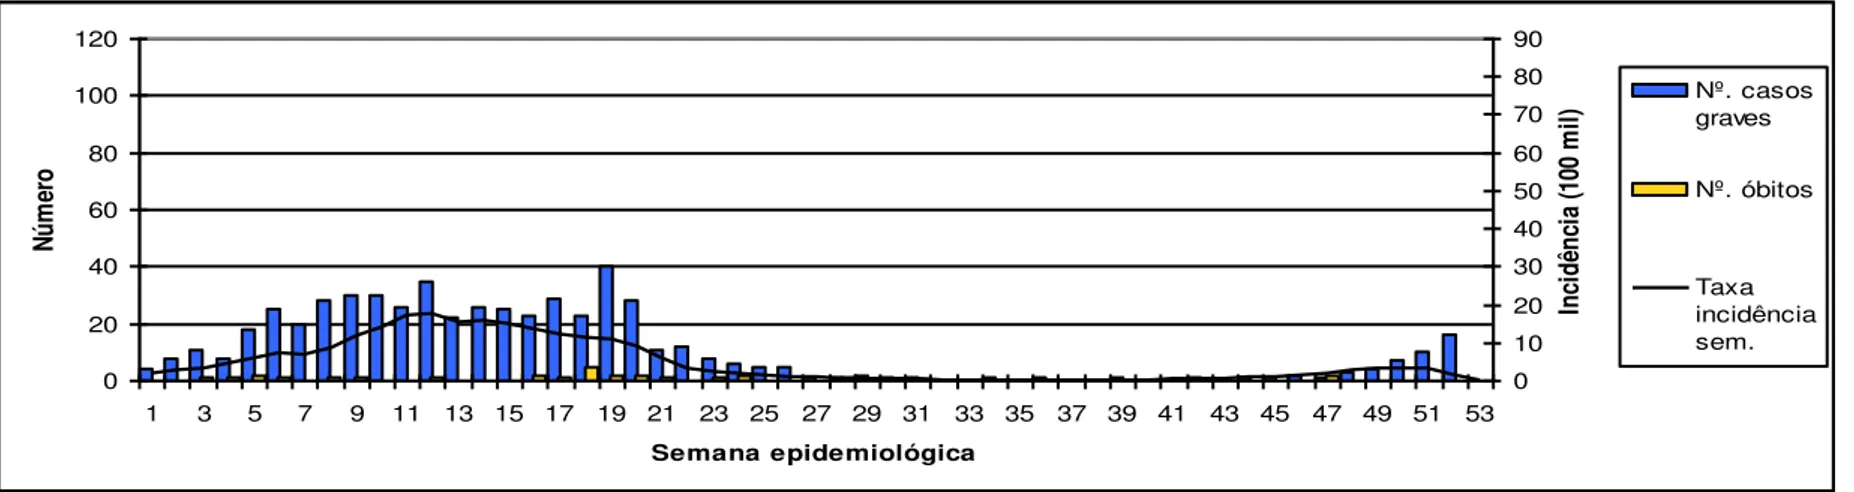 Figura 6 - Número de casos graves, óbitos e taxa de incidência semanal de dengue por 100.000 hab., Minas Gerais, 2009 